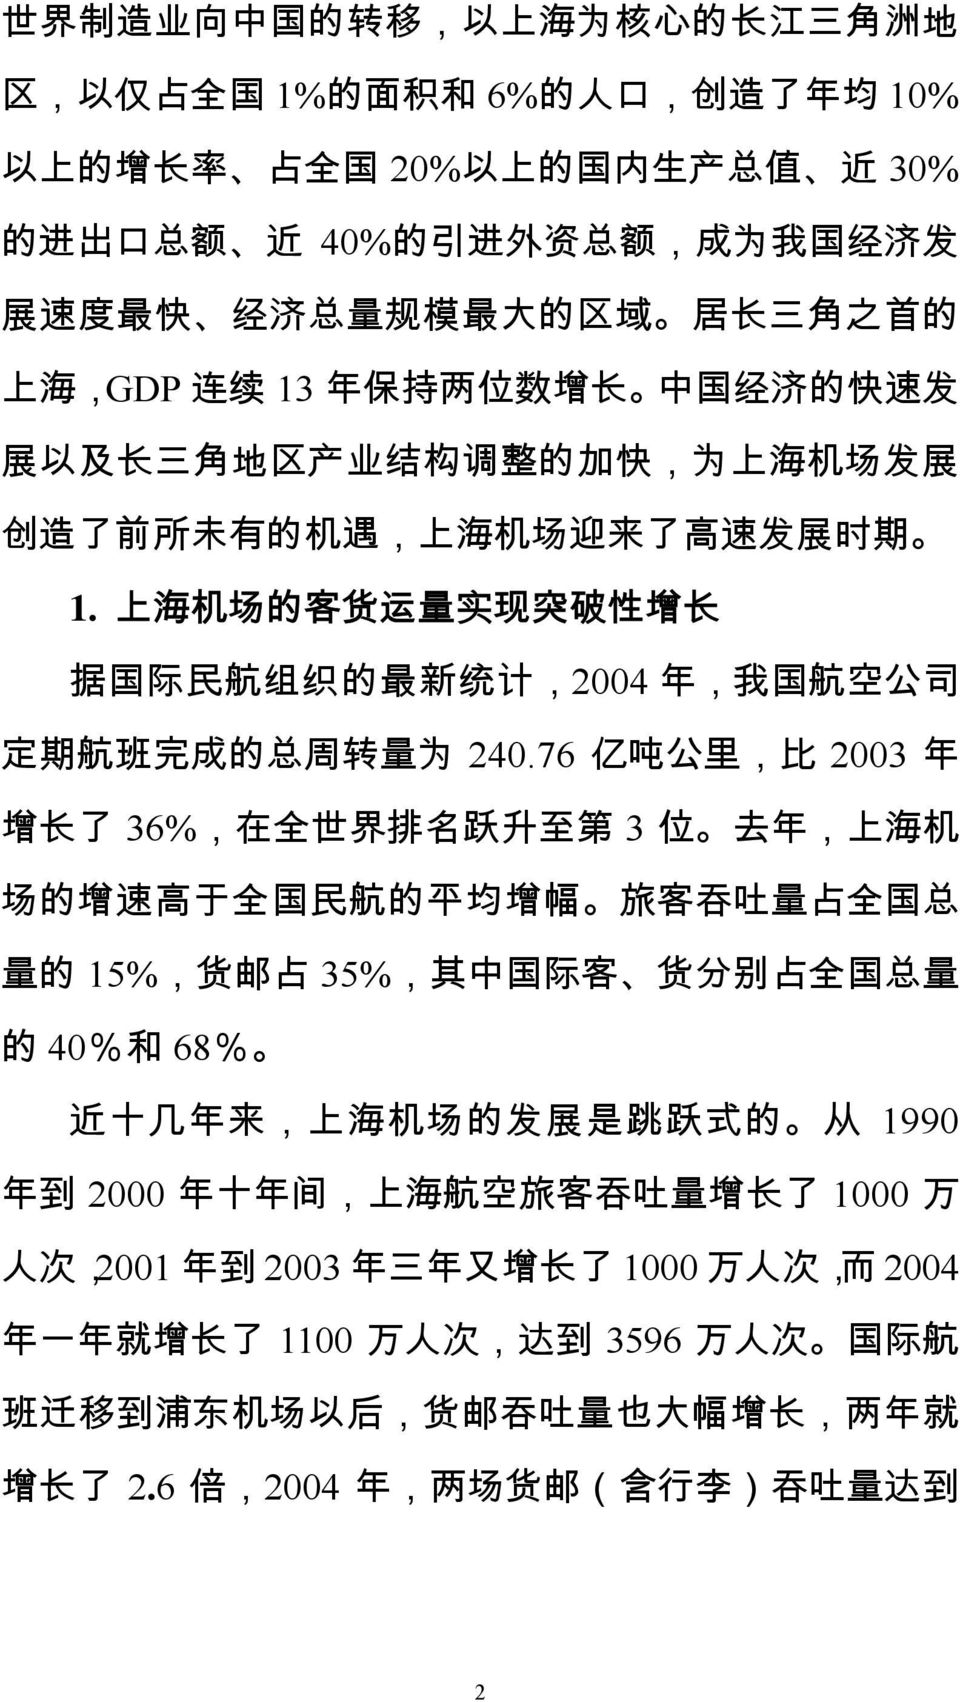 上 海 机 场 的 客 货 运 量 实 现 突 破 性 增 长 据 国 际 民 航 组 织 的 最 新 统 计,2004 年, 我 国 航 空 公 司 定 期 航 班 完 成 的 总 周 转 量 为 240.